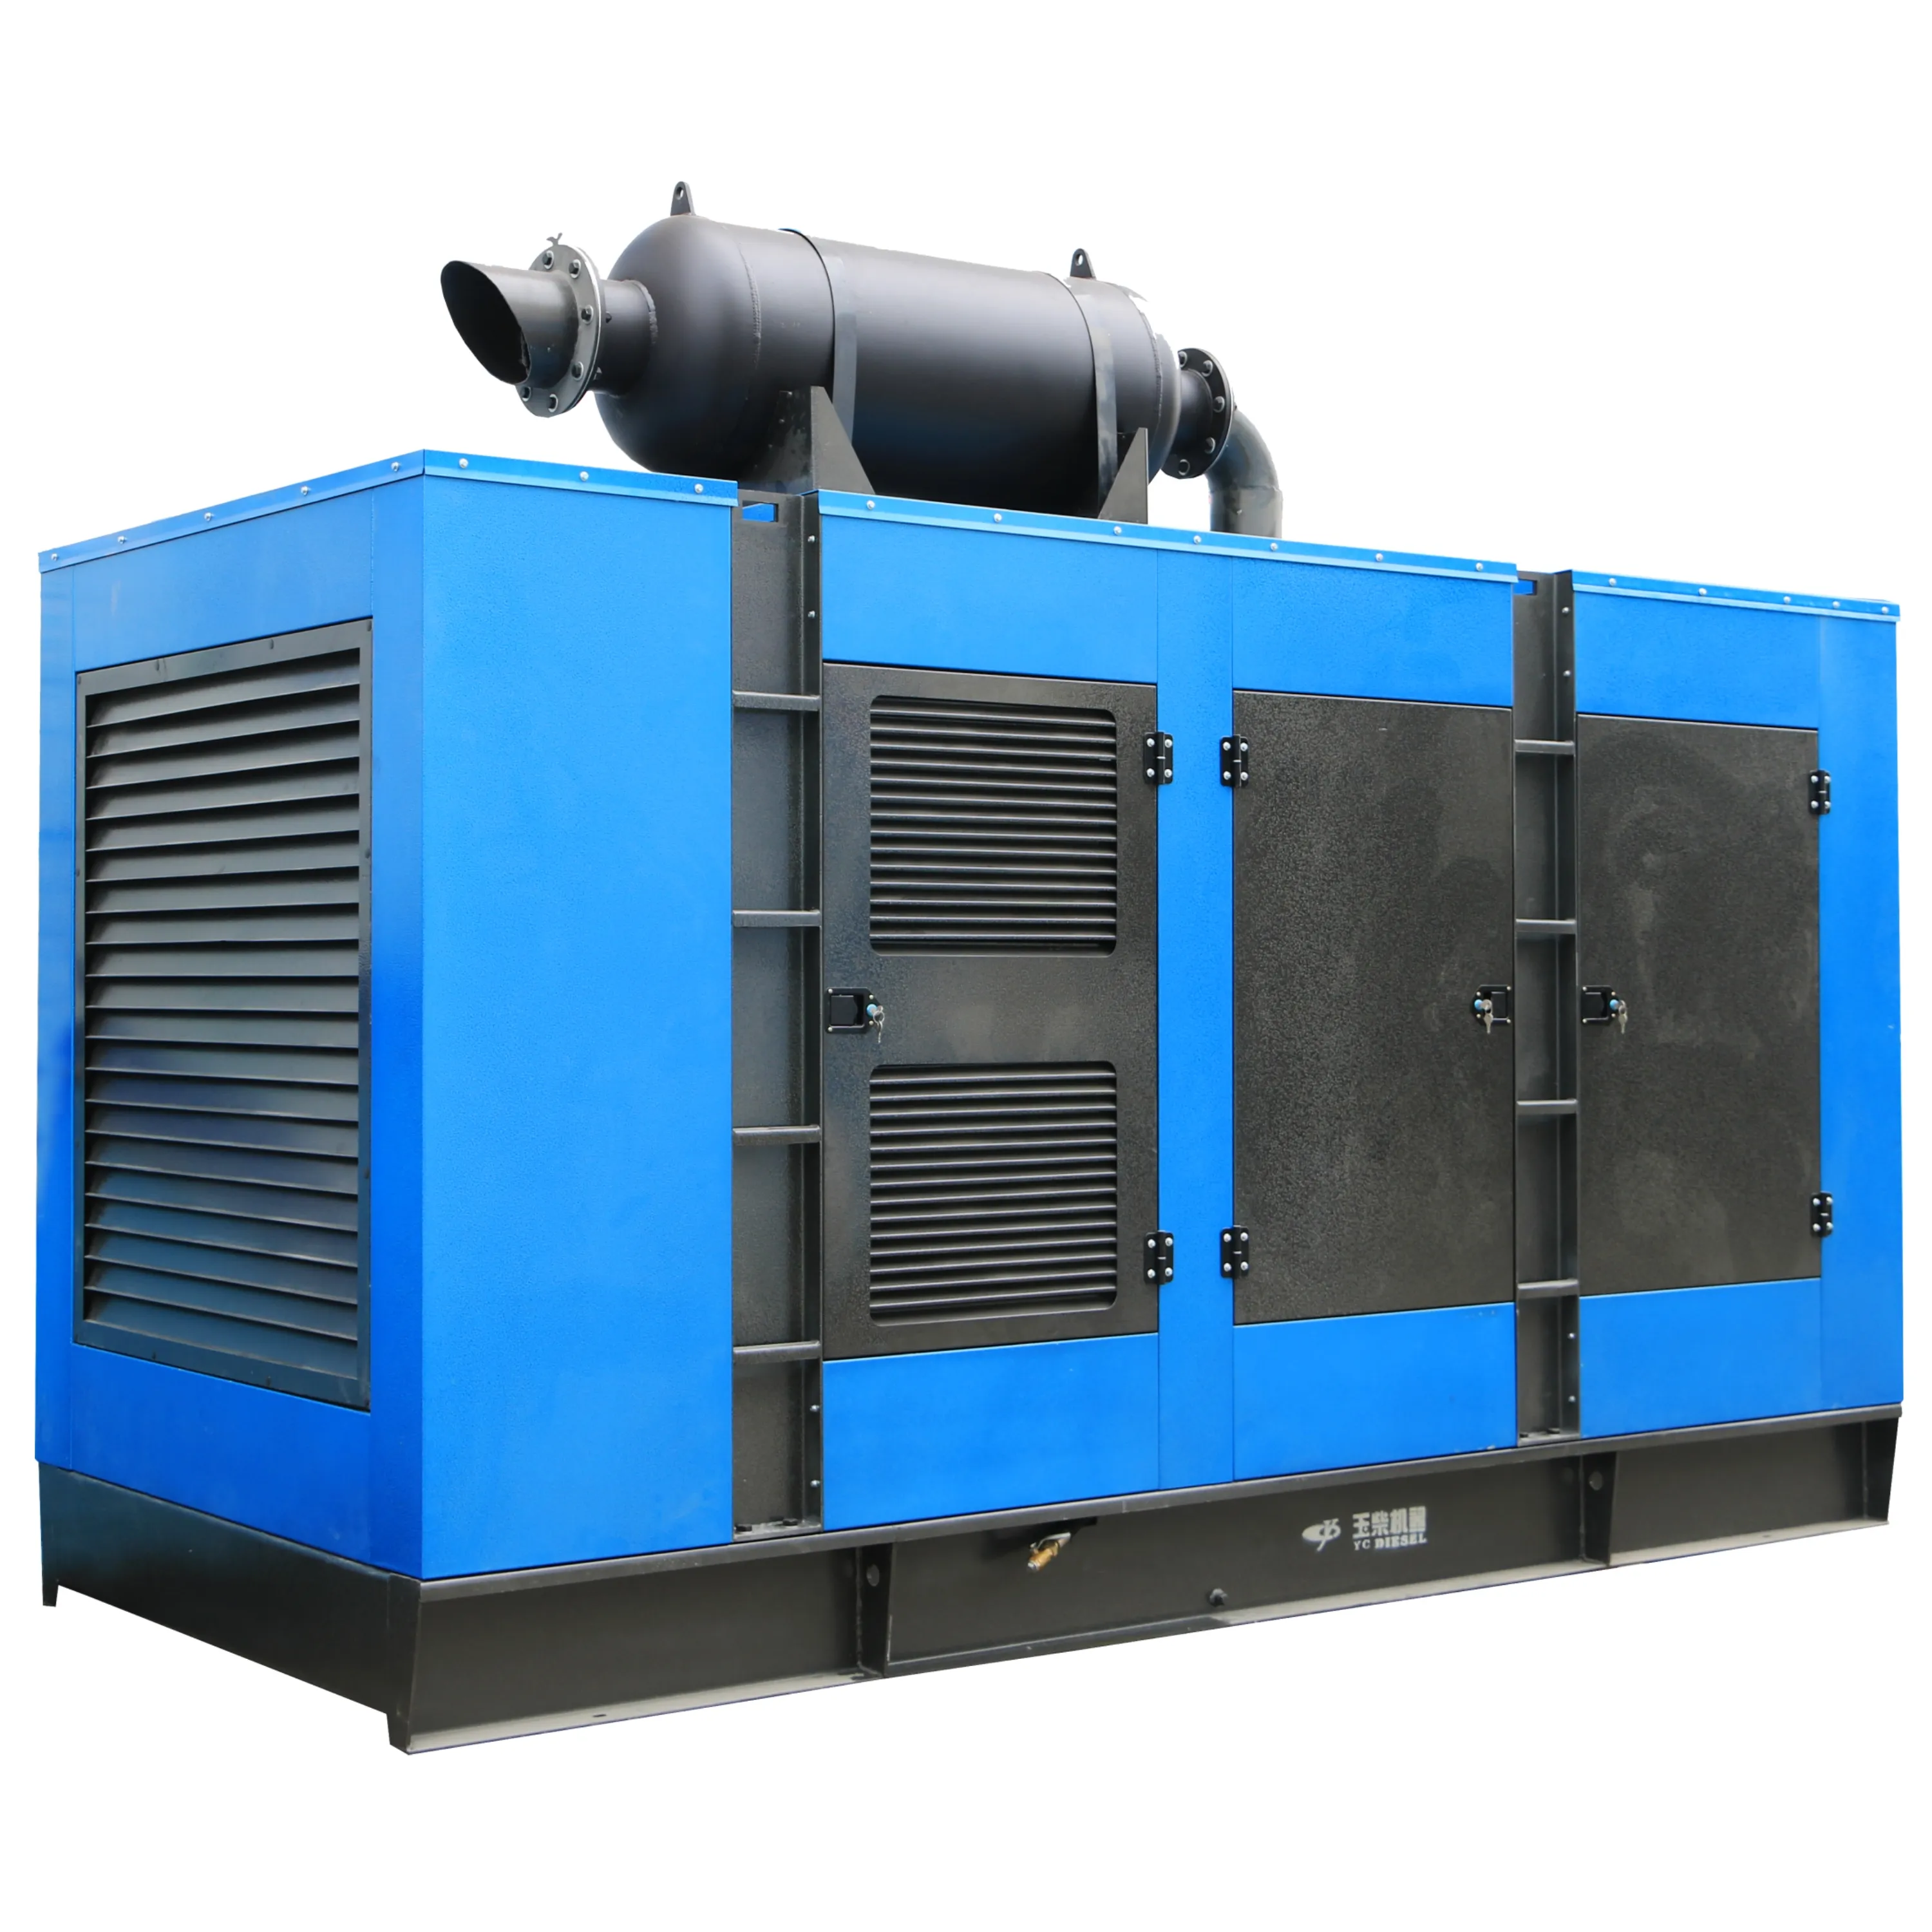 Superleiser Diesel-Generator-Set geräuscharmer 50 Hz Elektrischer Generator 3-Phasen-Leiser Diesel-Generator-Set für Zuhause